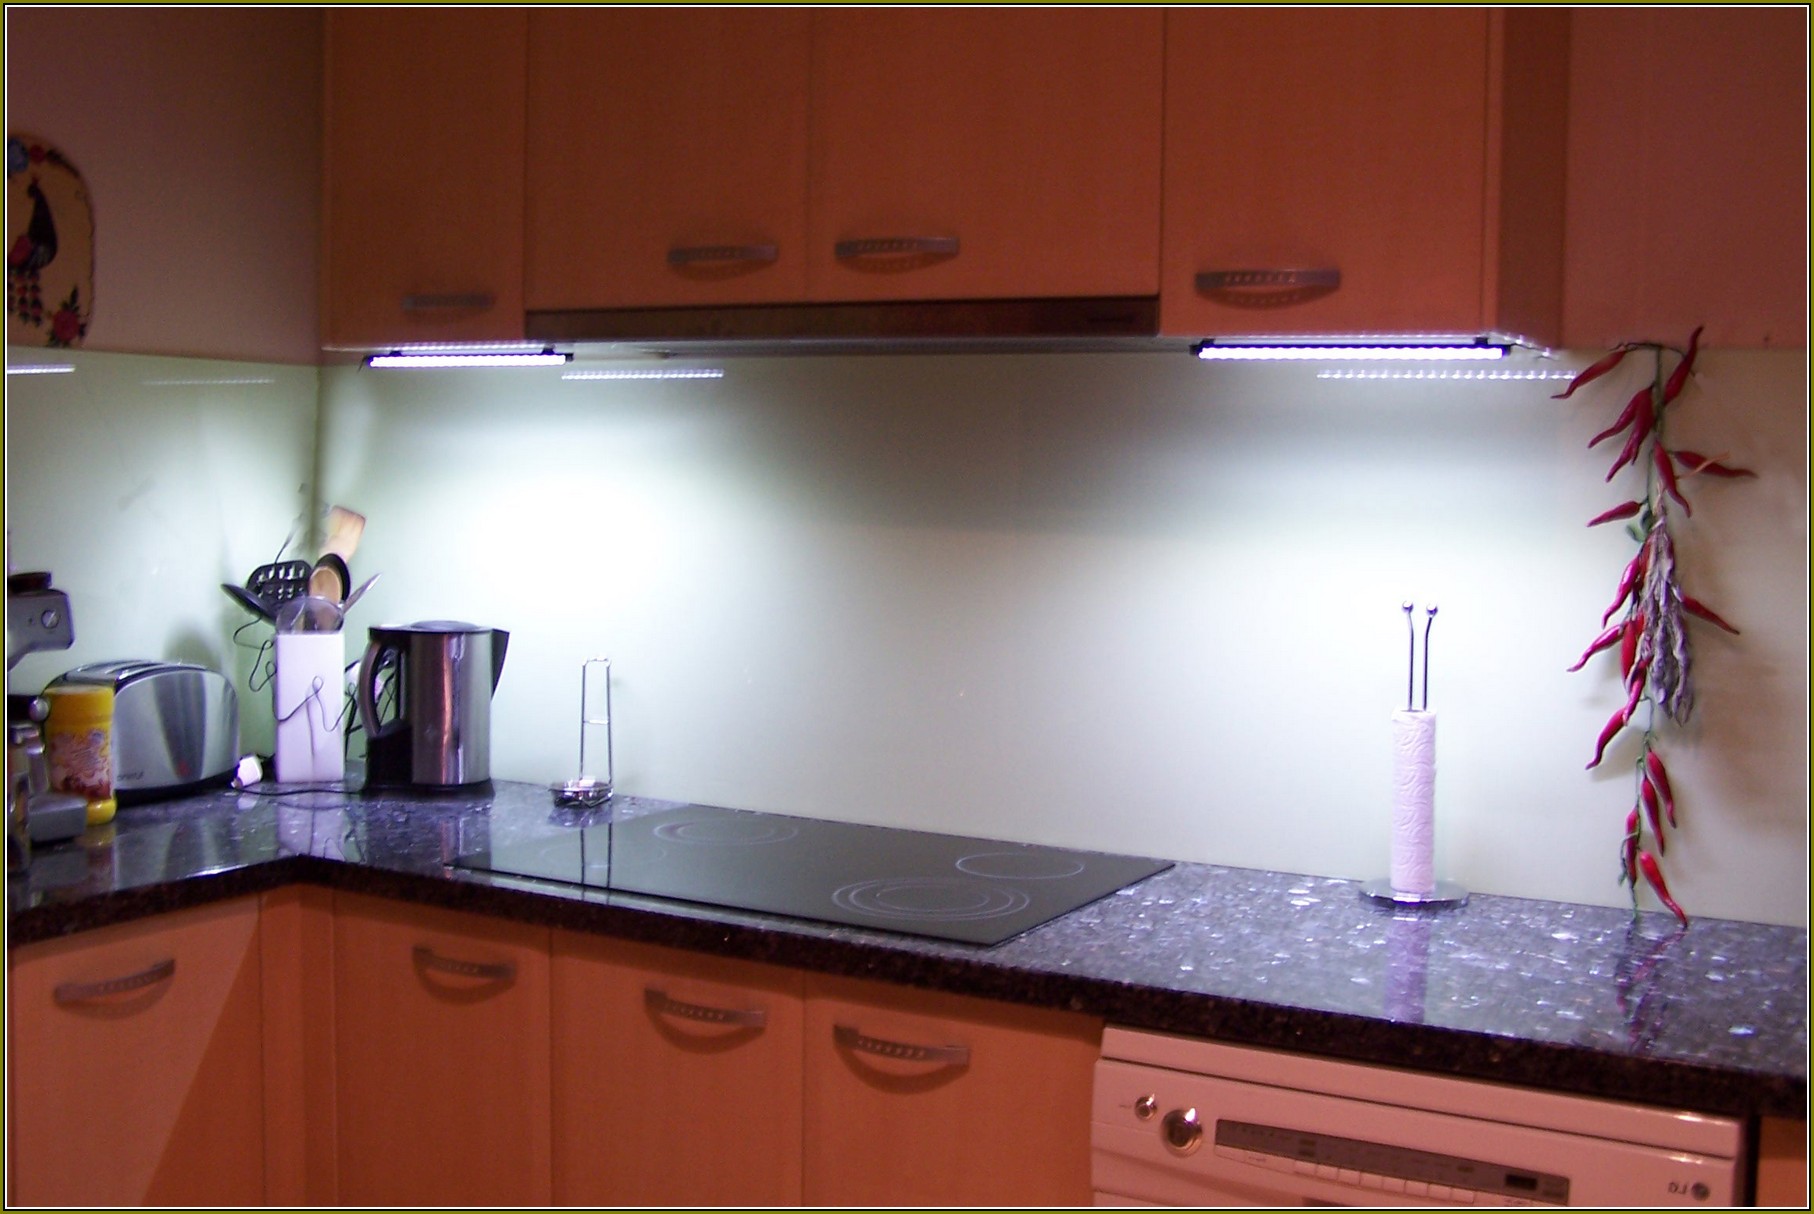 Hardwired Under Cabinet Lighting Kitchen